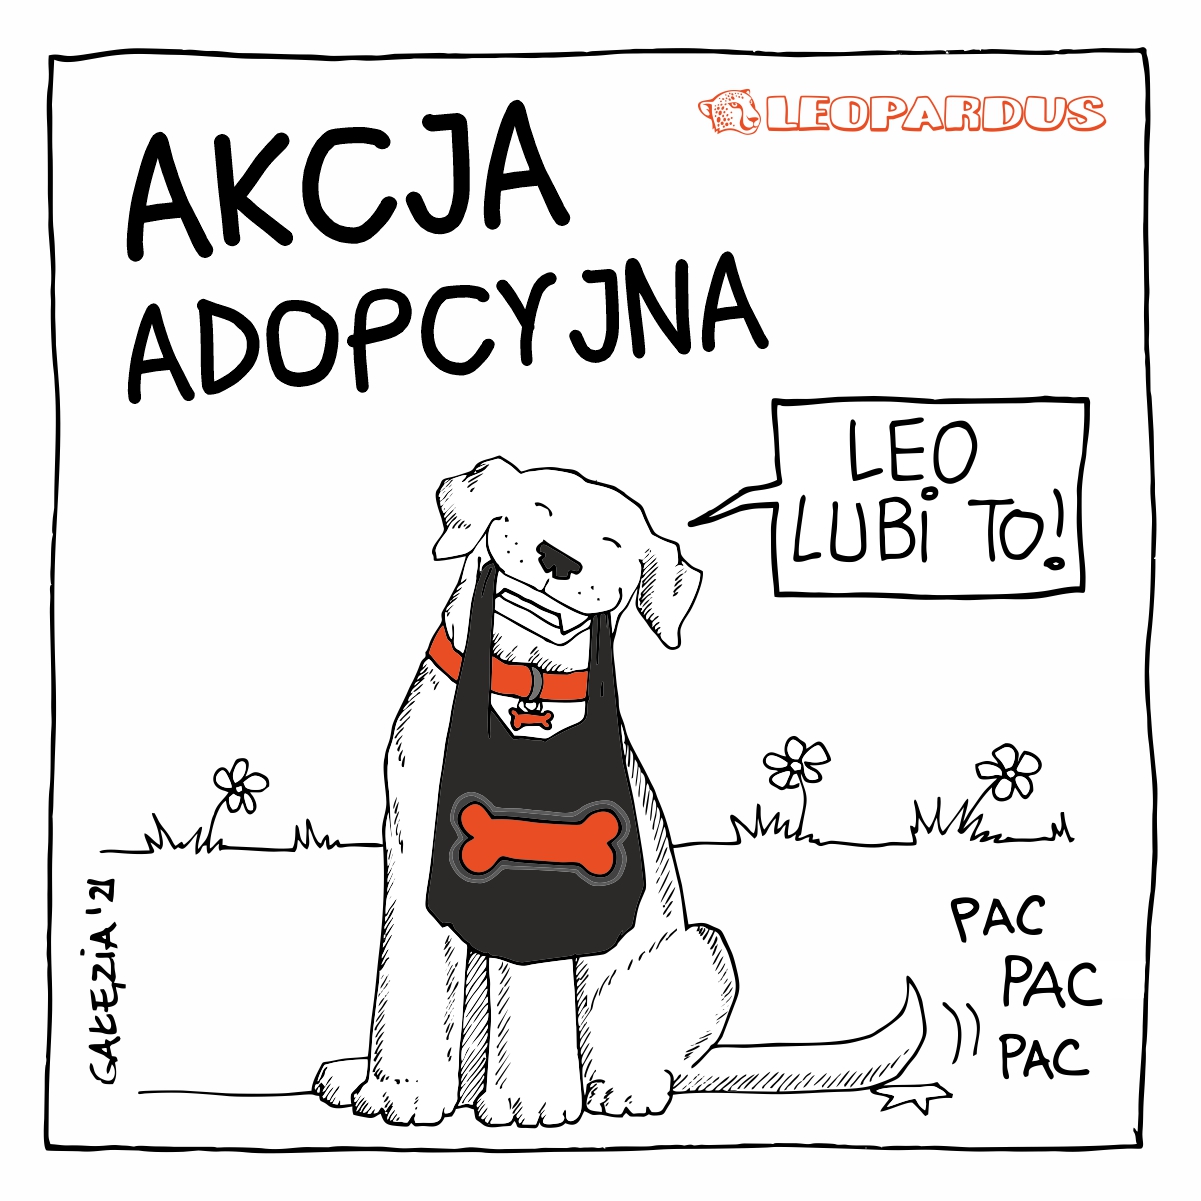 Akcja Adopcyjna w Leopardus